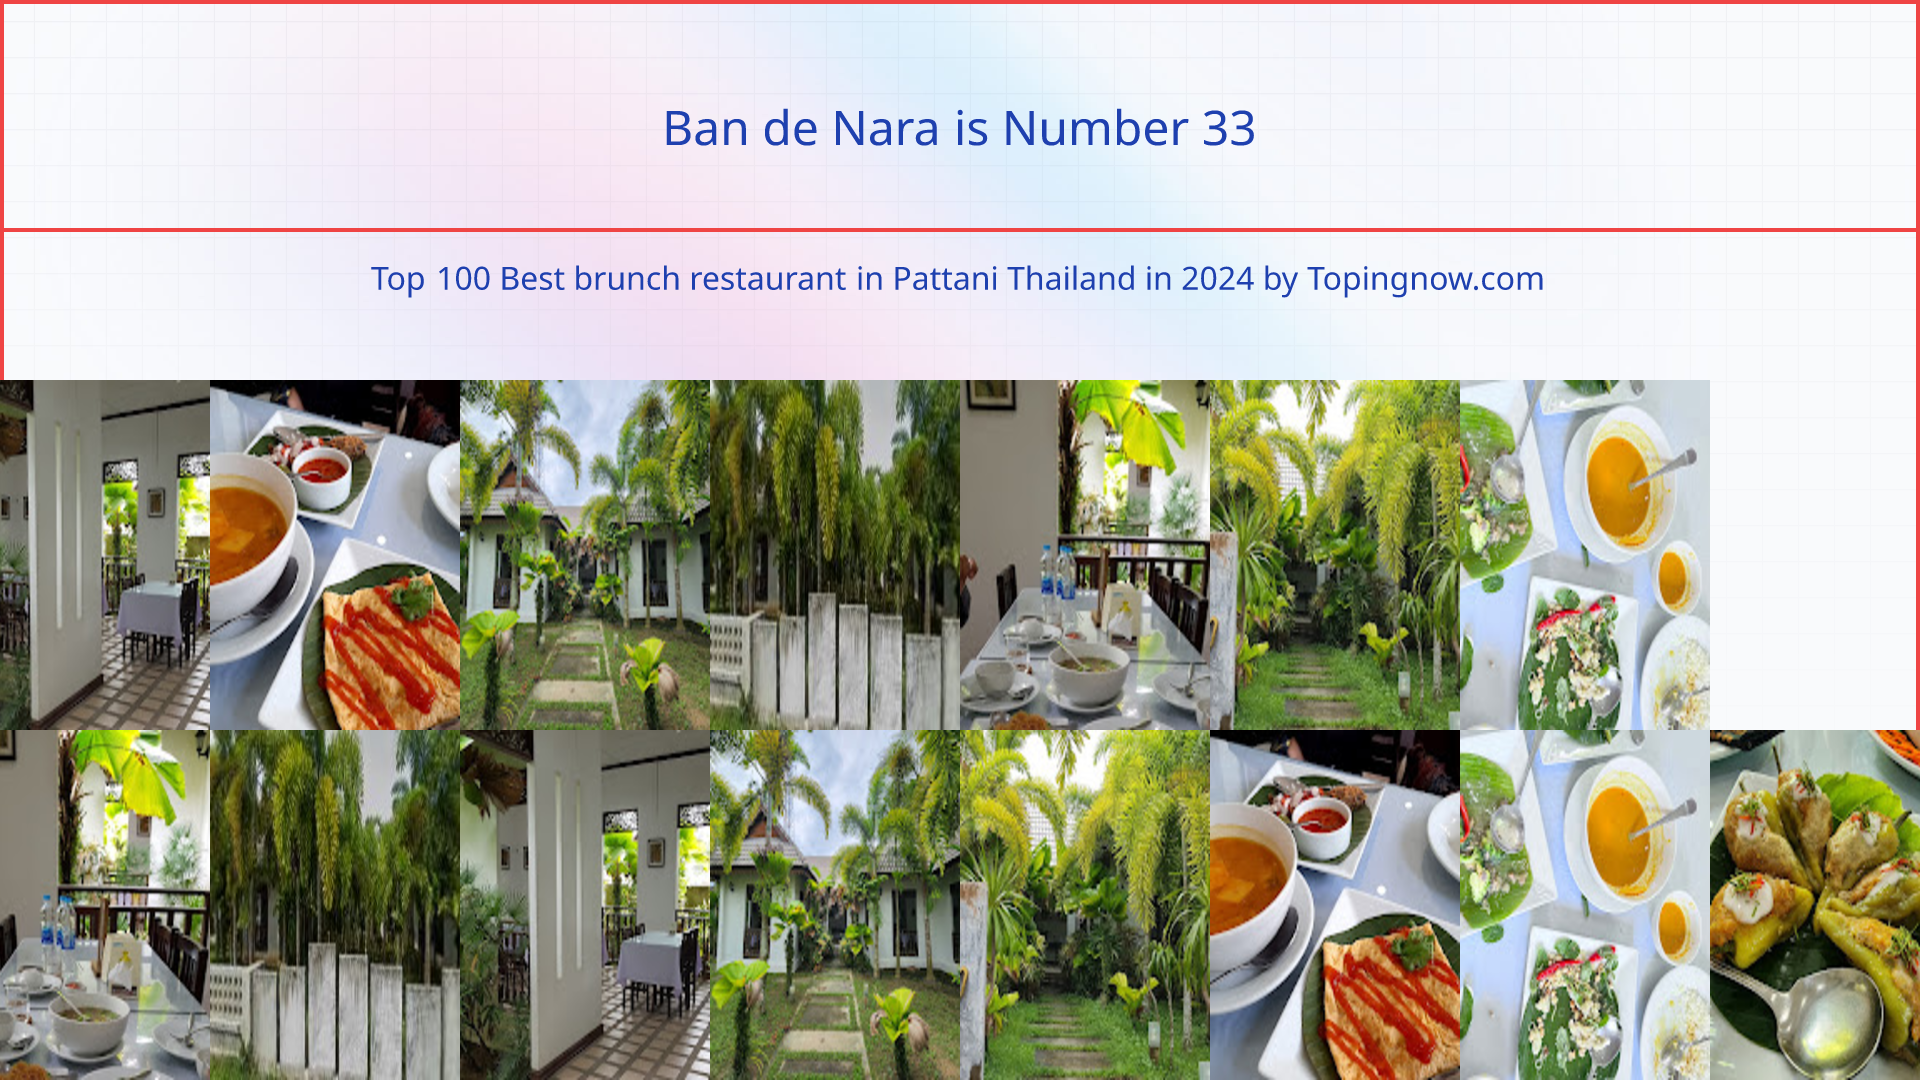 Ban de Nara: Top 100 Best brunch restaurant in Pattani Thailand in 2024